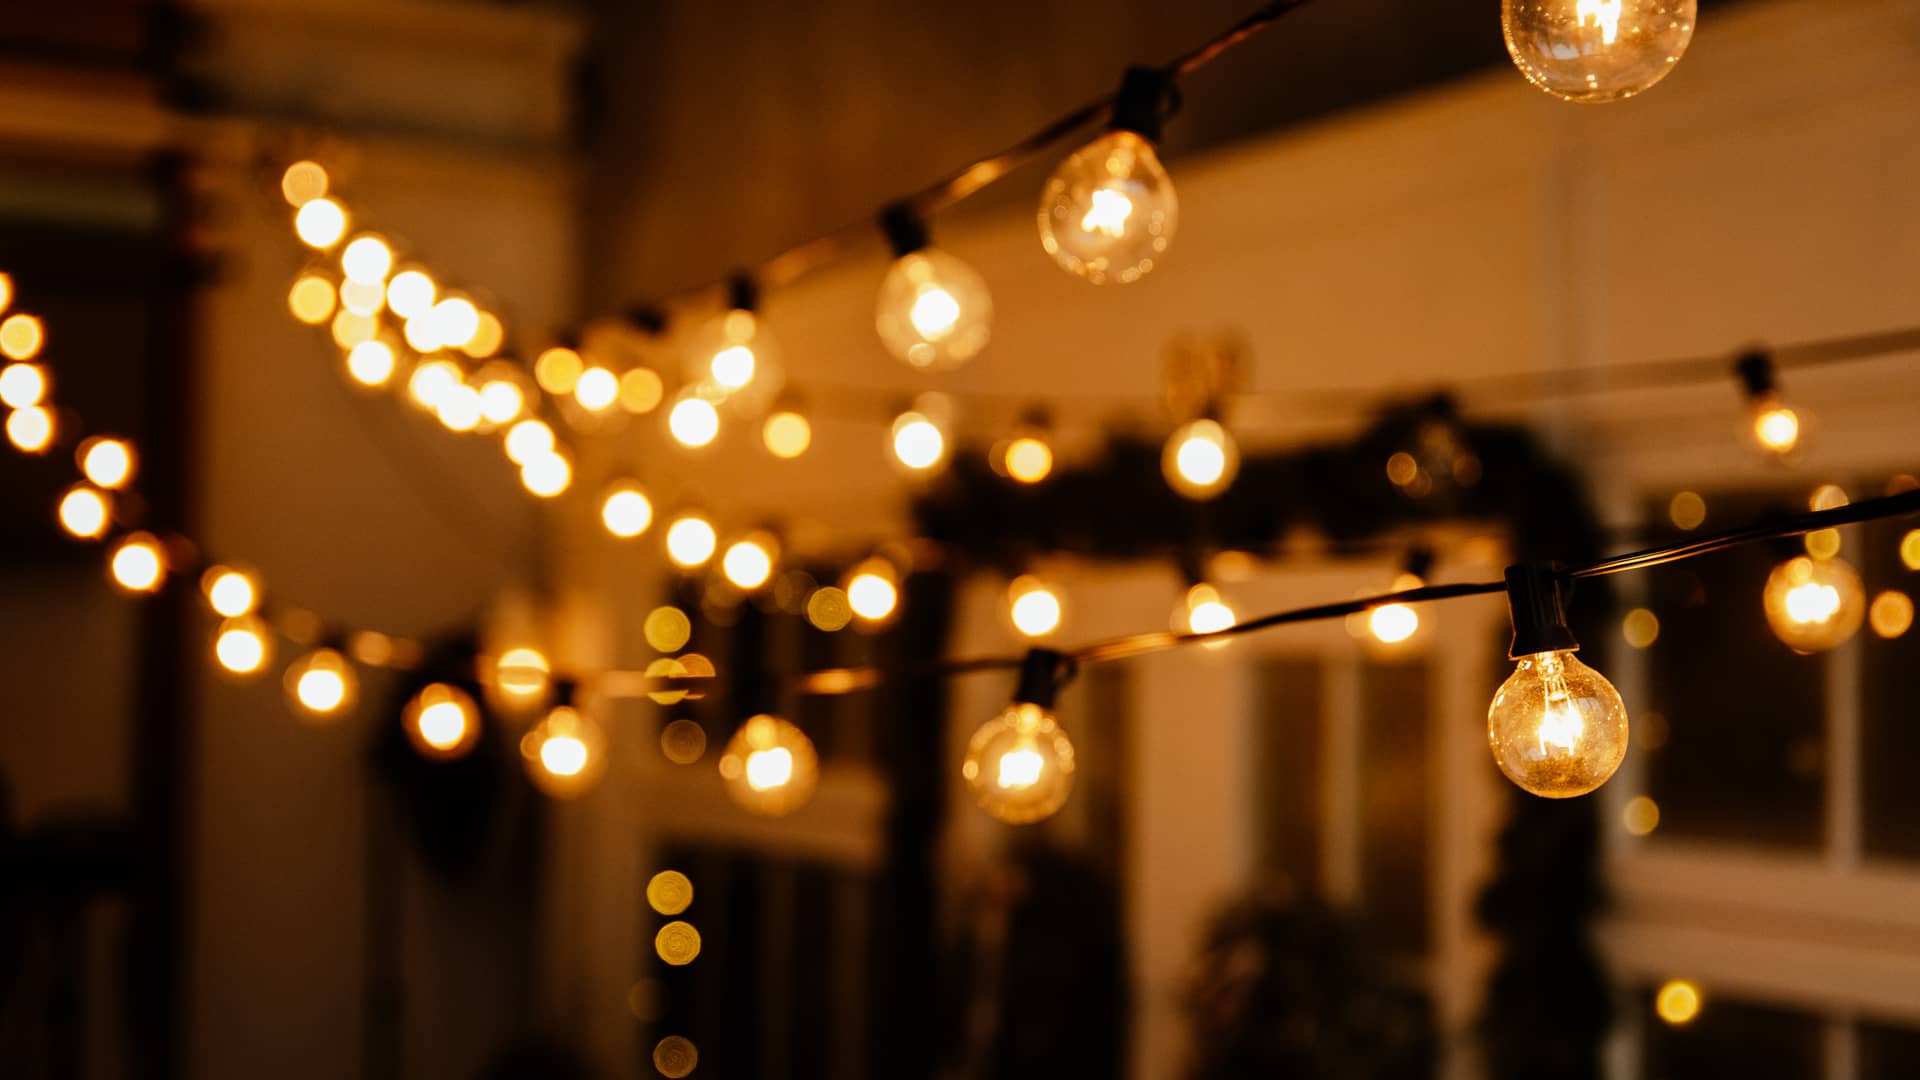 patio de una casa iluminado con bombillas que representa la tarifa nocturna de endesa